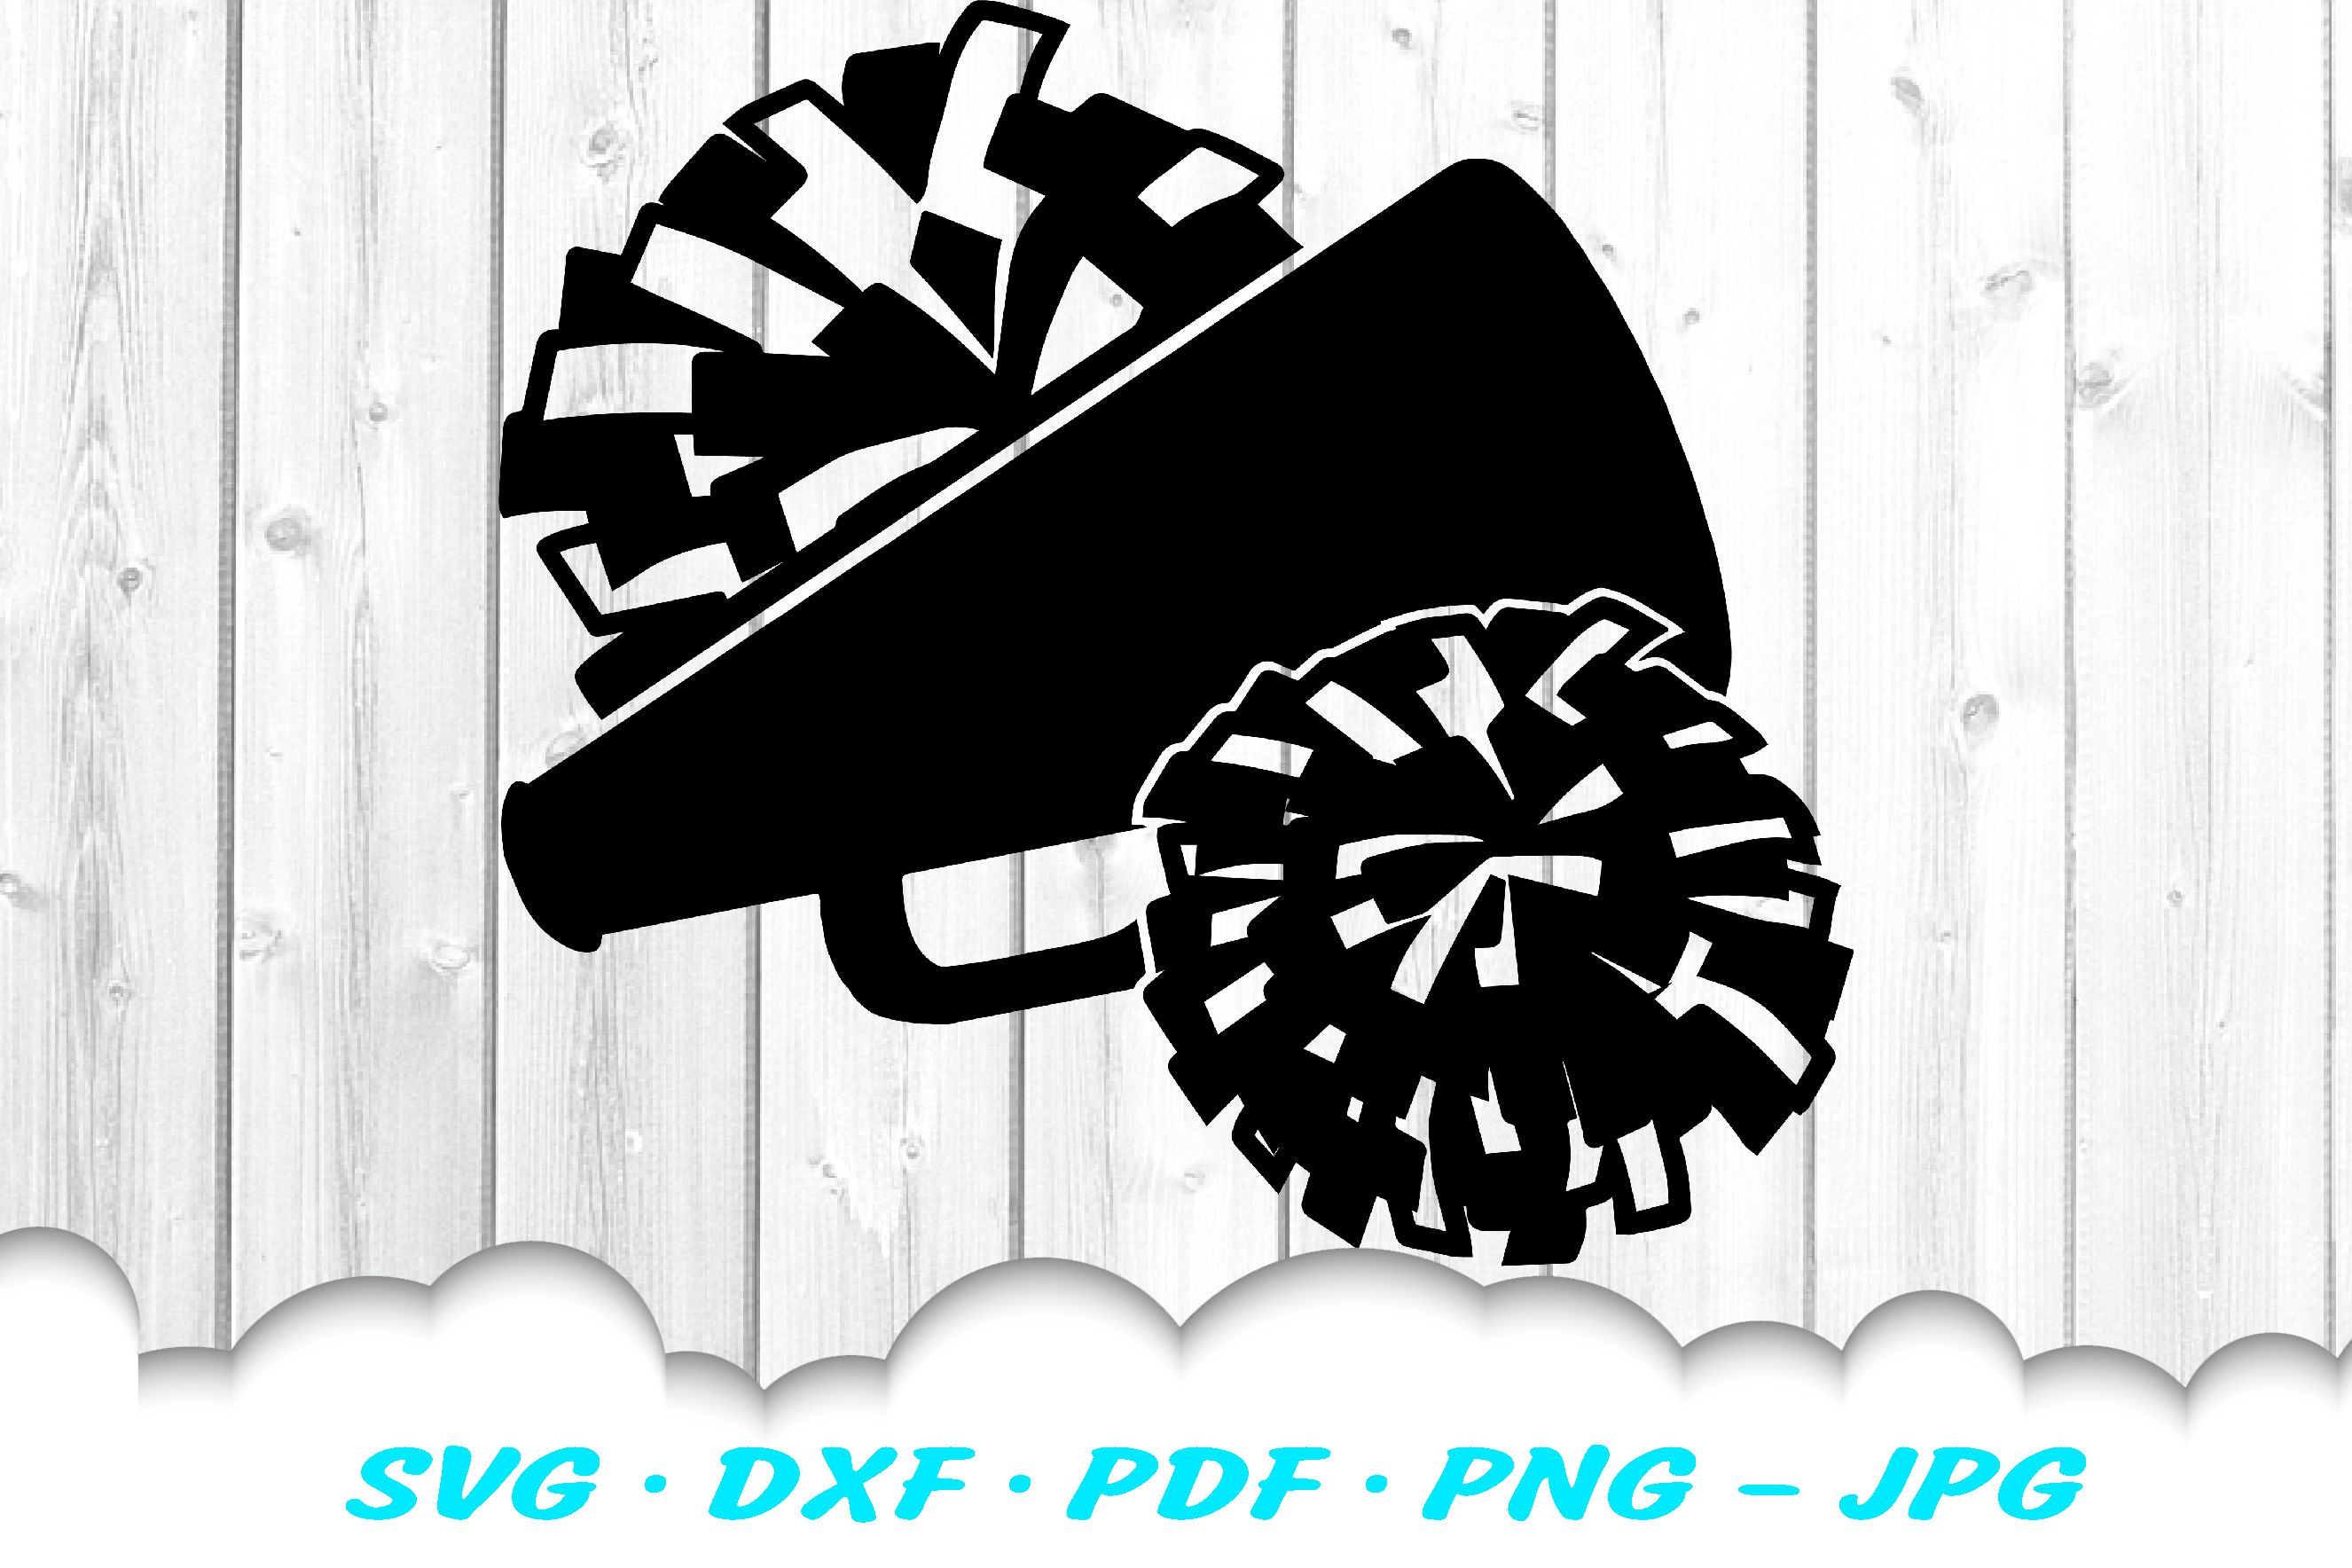 Cheer Megaphone Clip Art SVG